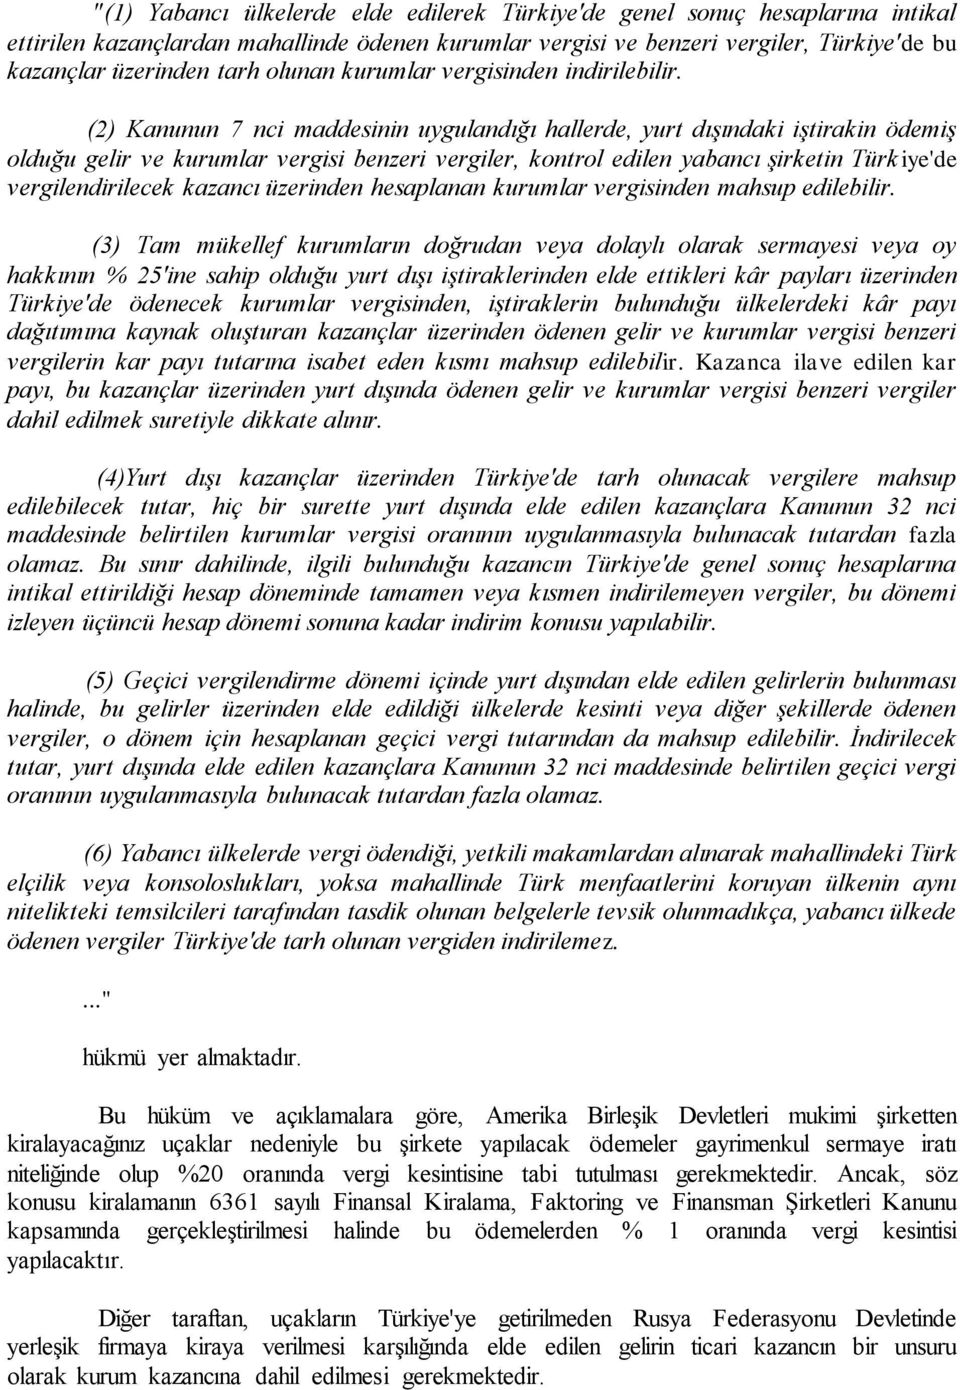 (2) Kanunun 7 nci maddesinin uygulandığı hallerde, yurt dışındaki iştirakin ödemiş olduğu gelir ve kurumlar vergisi benzeri vergiler, kontrol edilen yabancı şirketin Türkiye'de vergilendirilecek